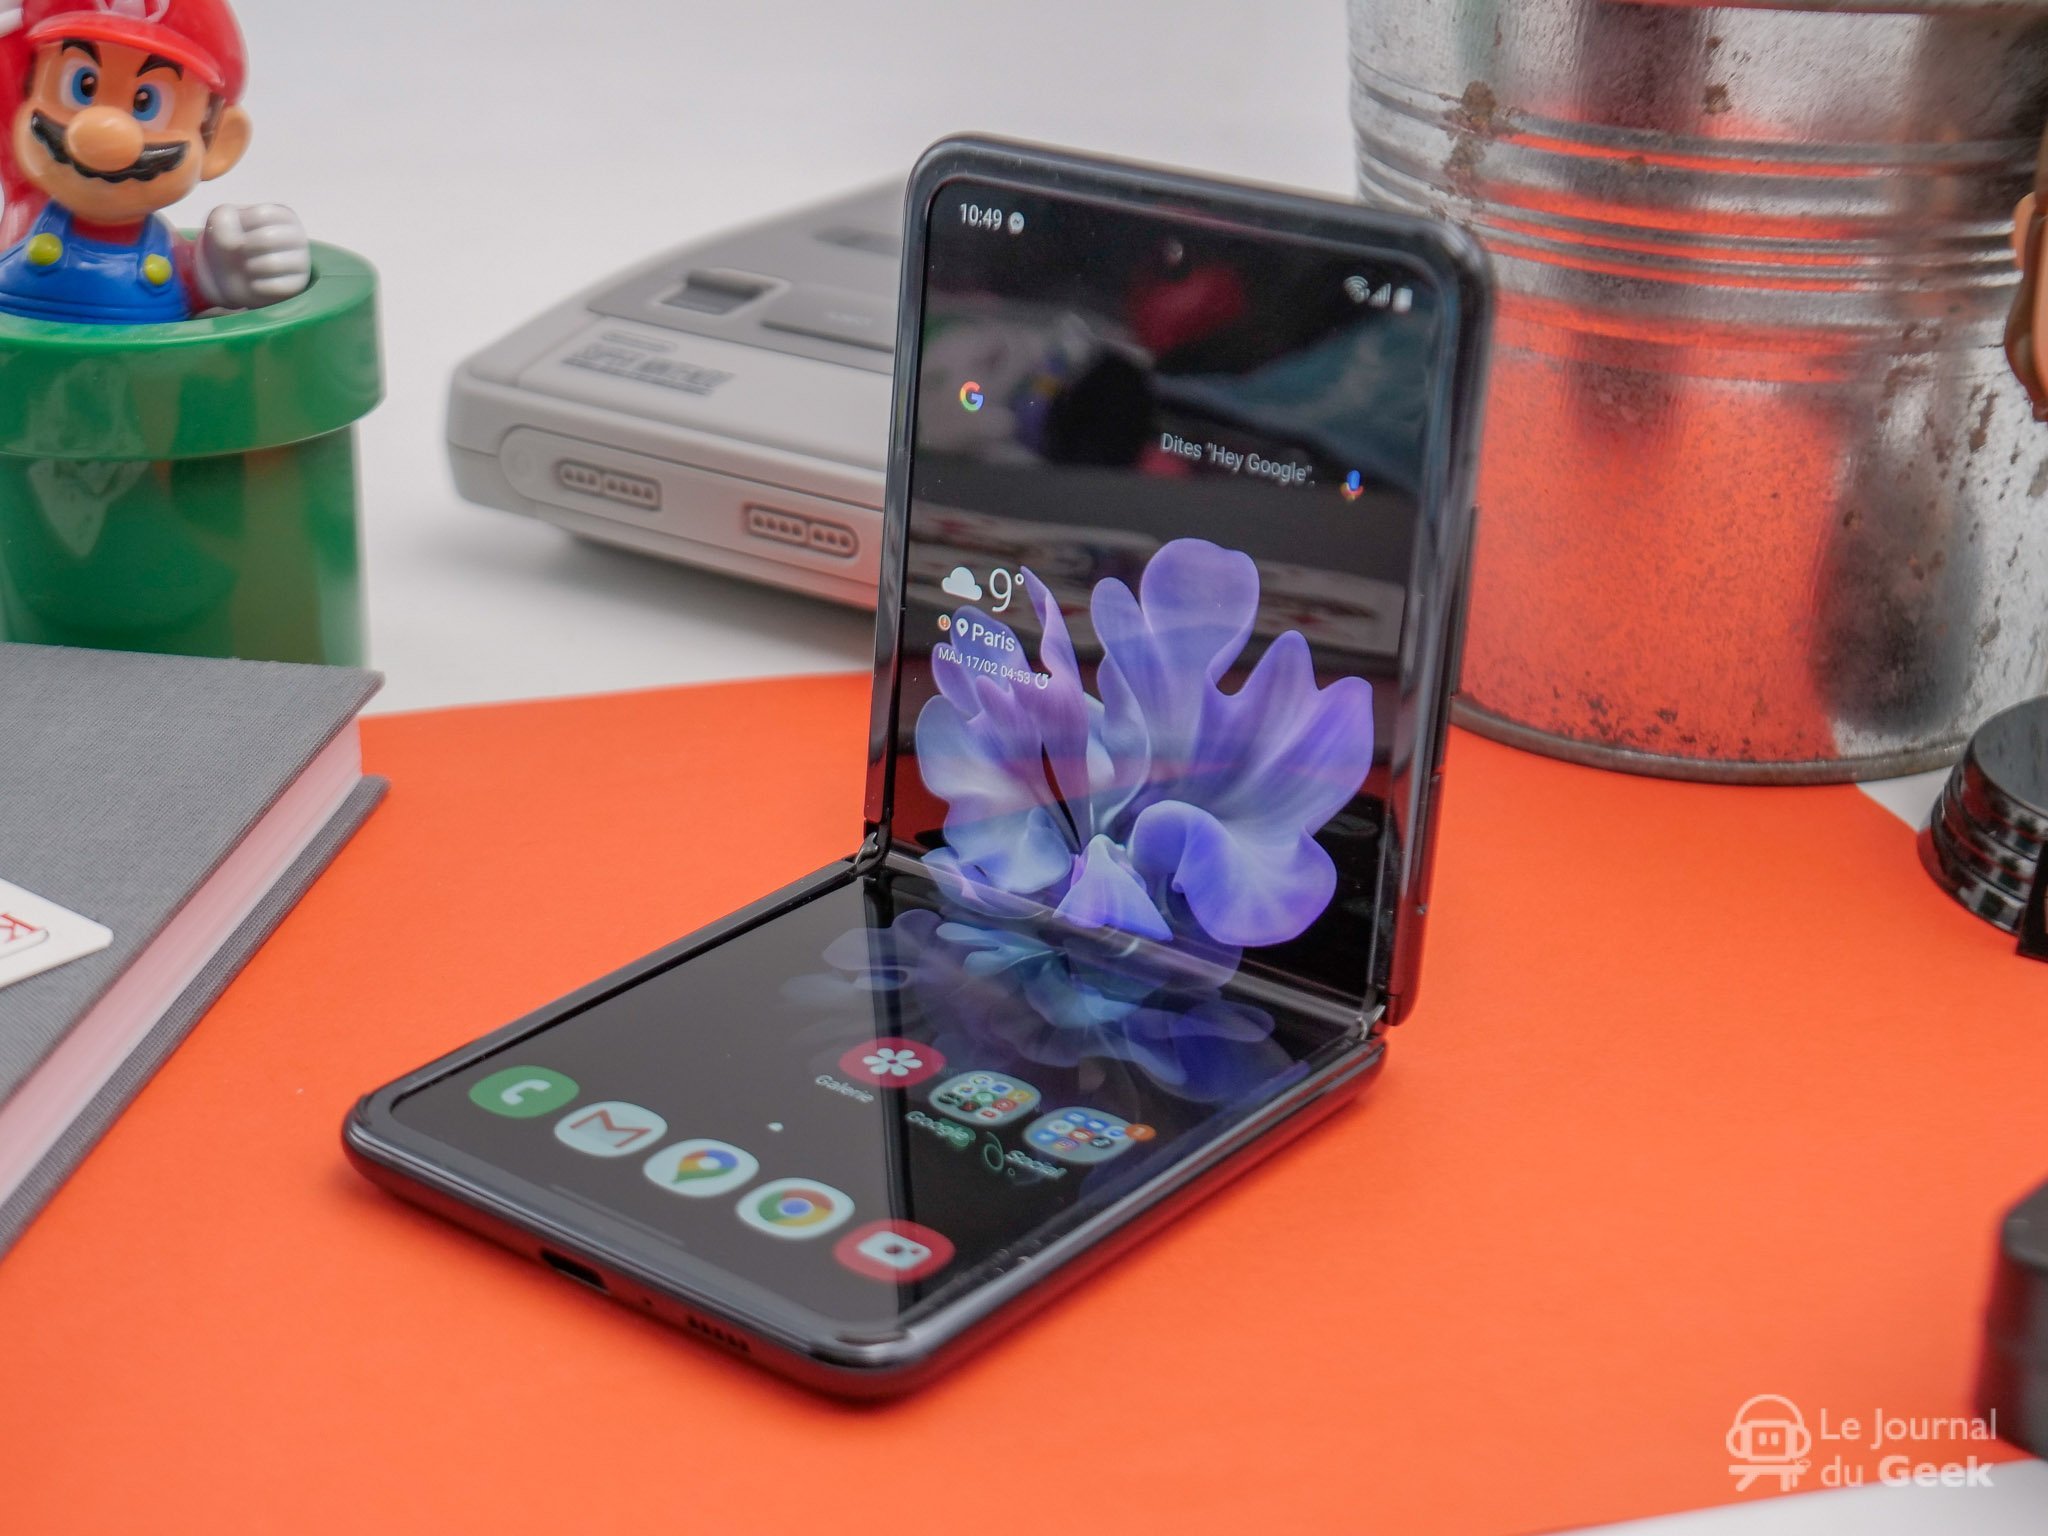 Samsung dévoile son smartphone à écran pliable, le Galaxy Fold - Le Parisien